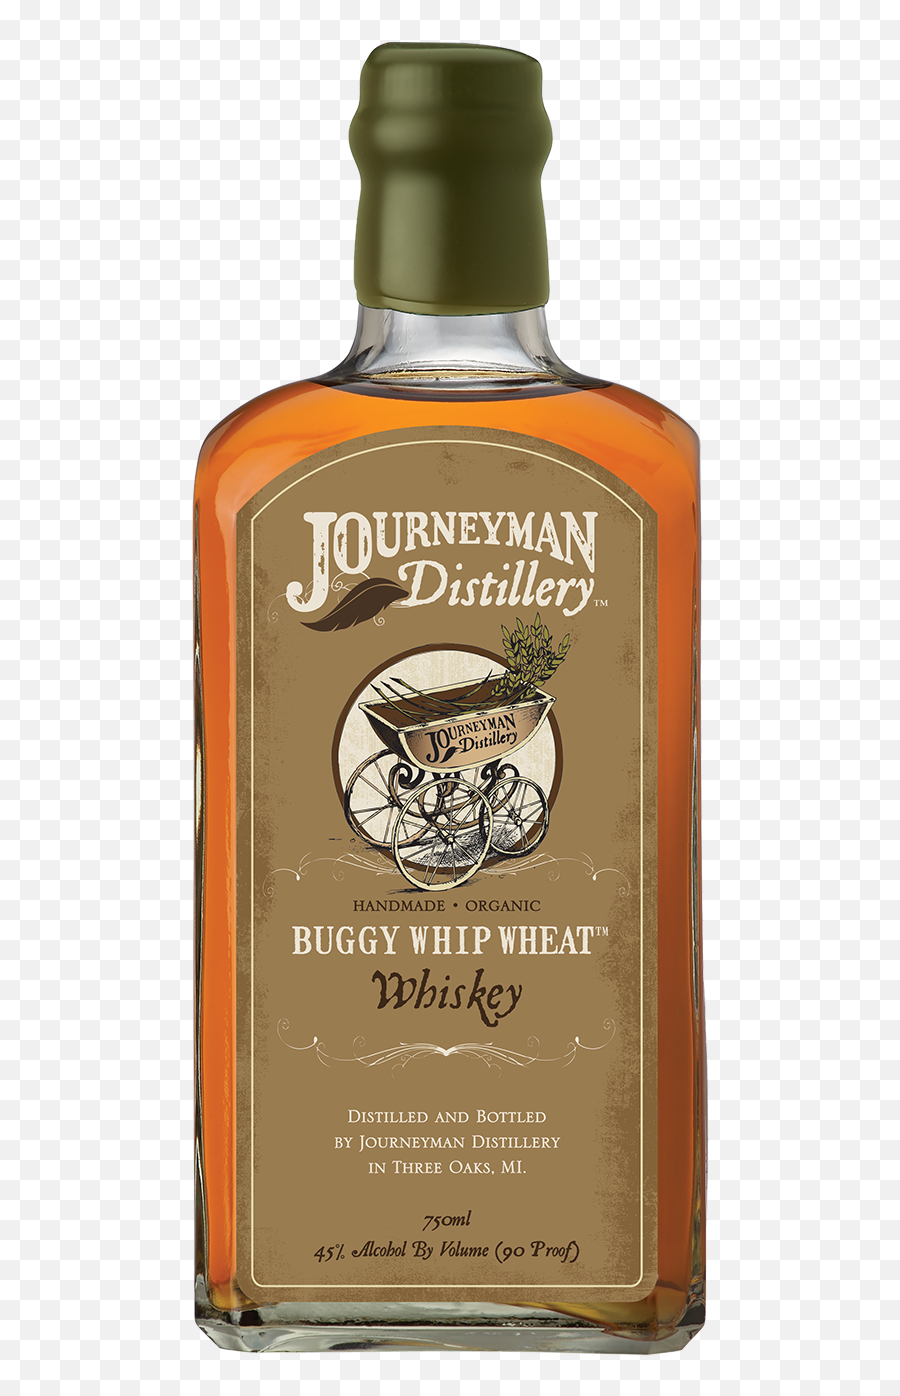 Buggy Whip Wheat Whiskey U2014 Journeyman Distillery Emoji,Punch Buggy Emoticon